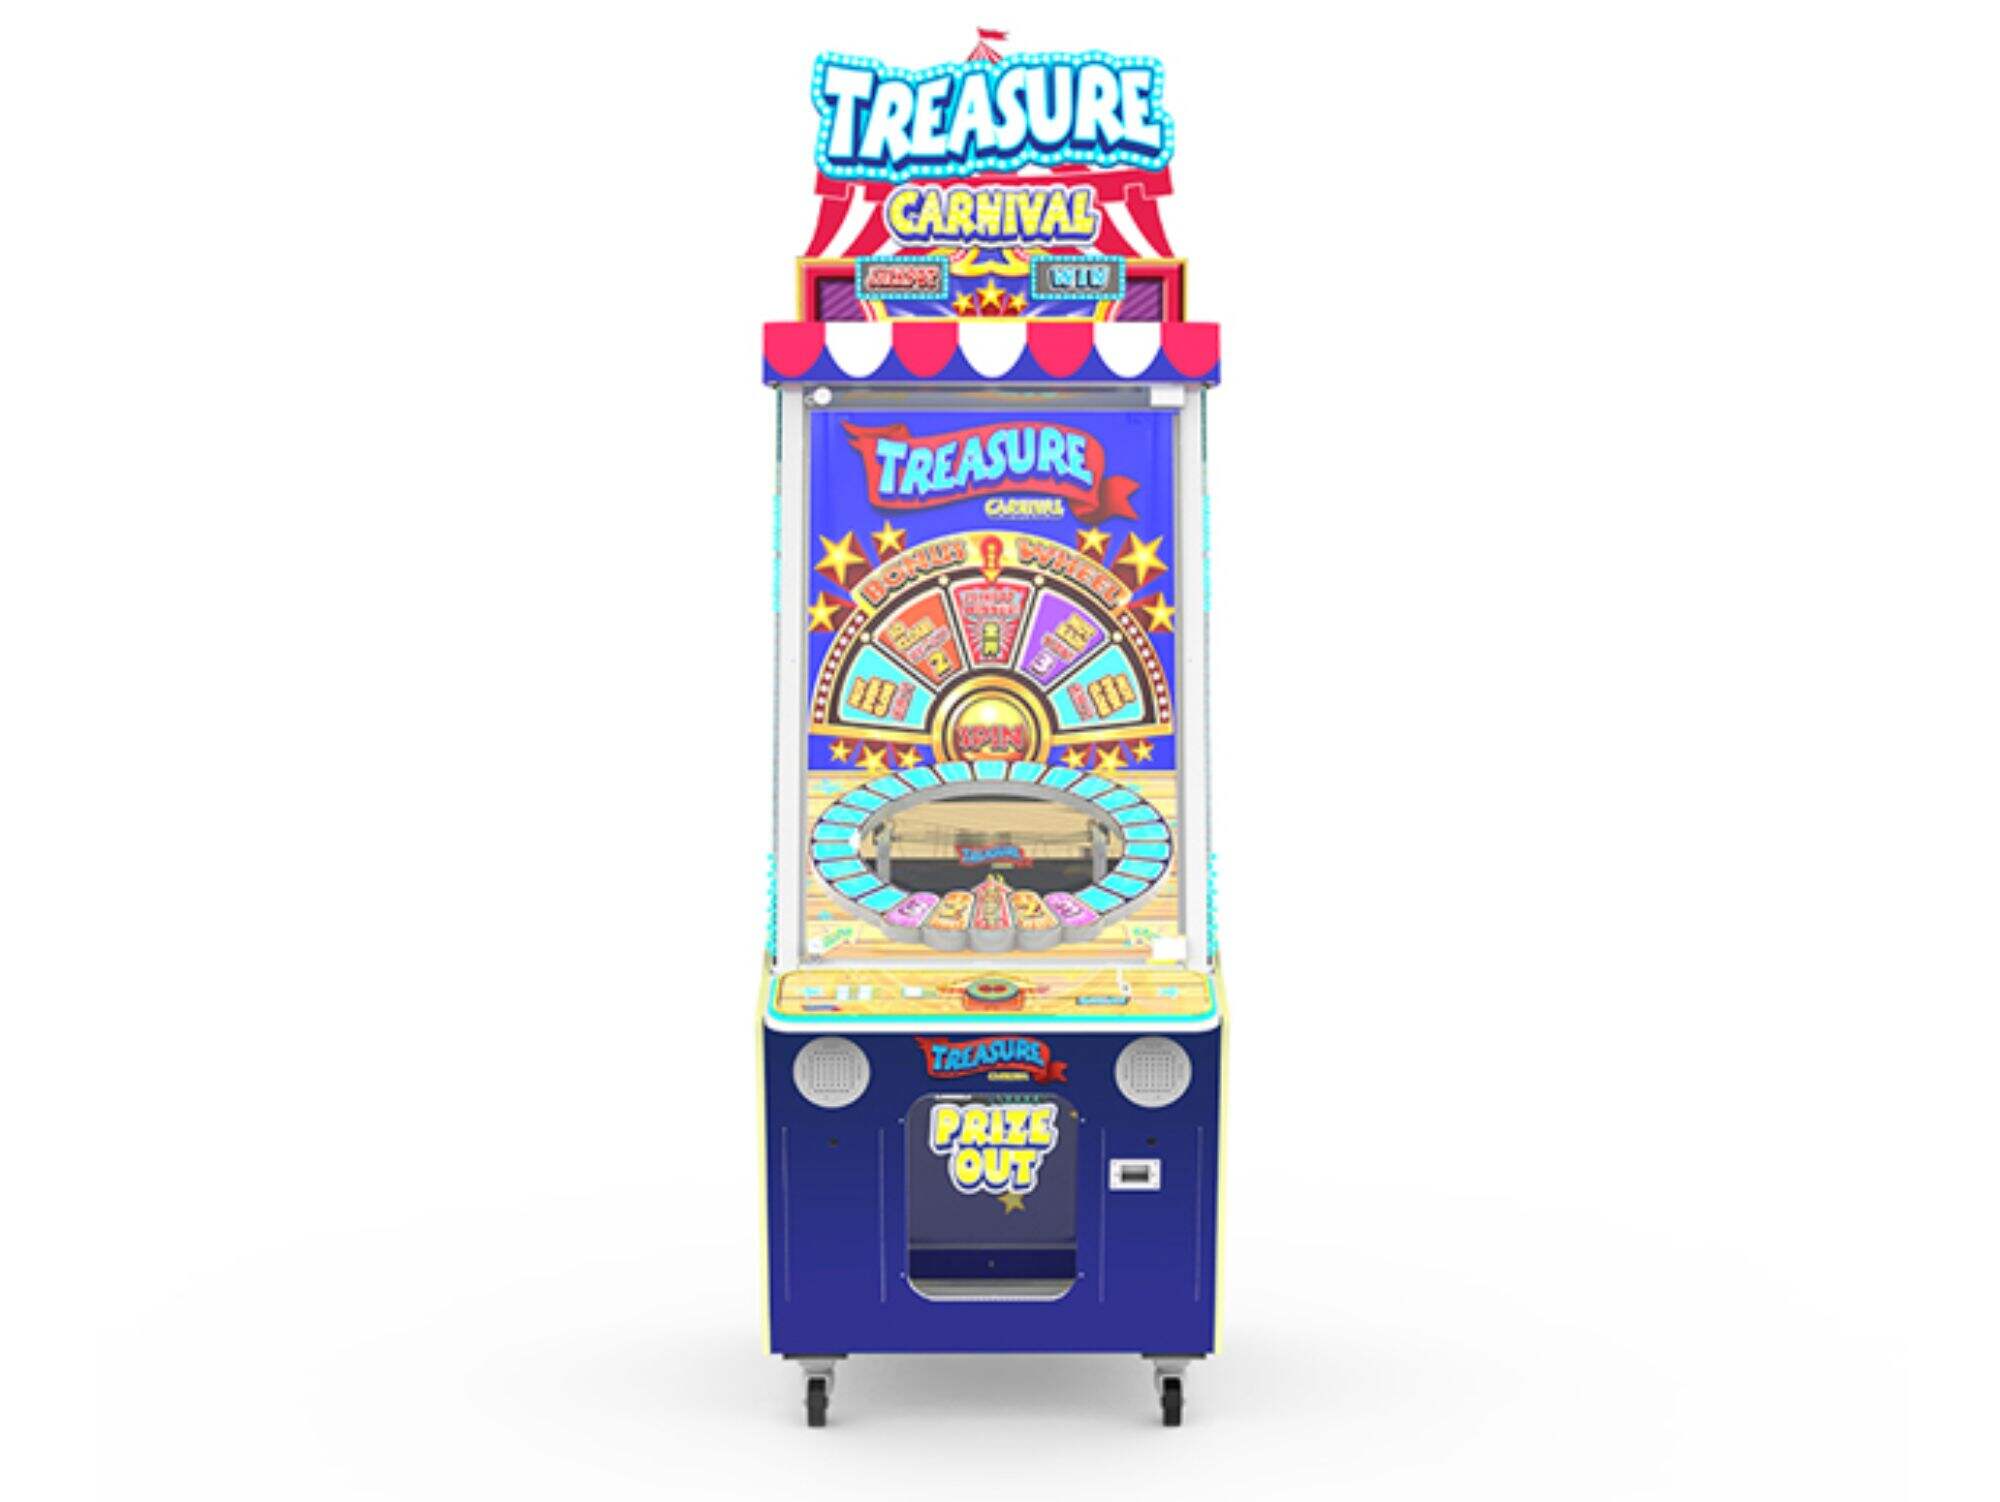 Treasure Carnival Prize Redemption Game Machine